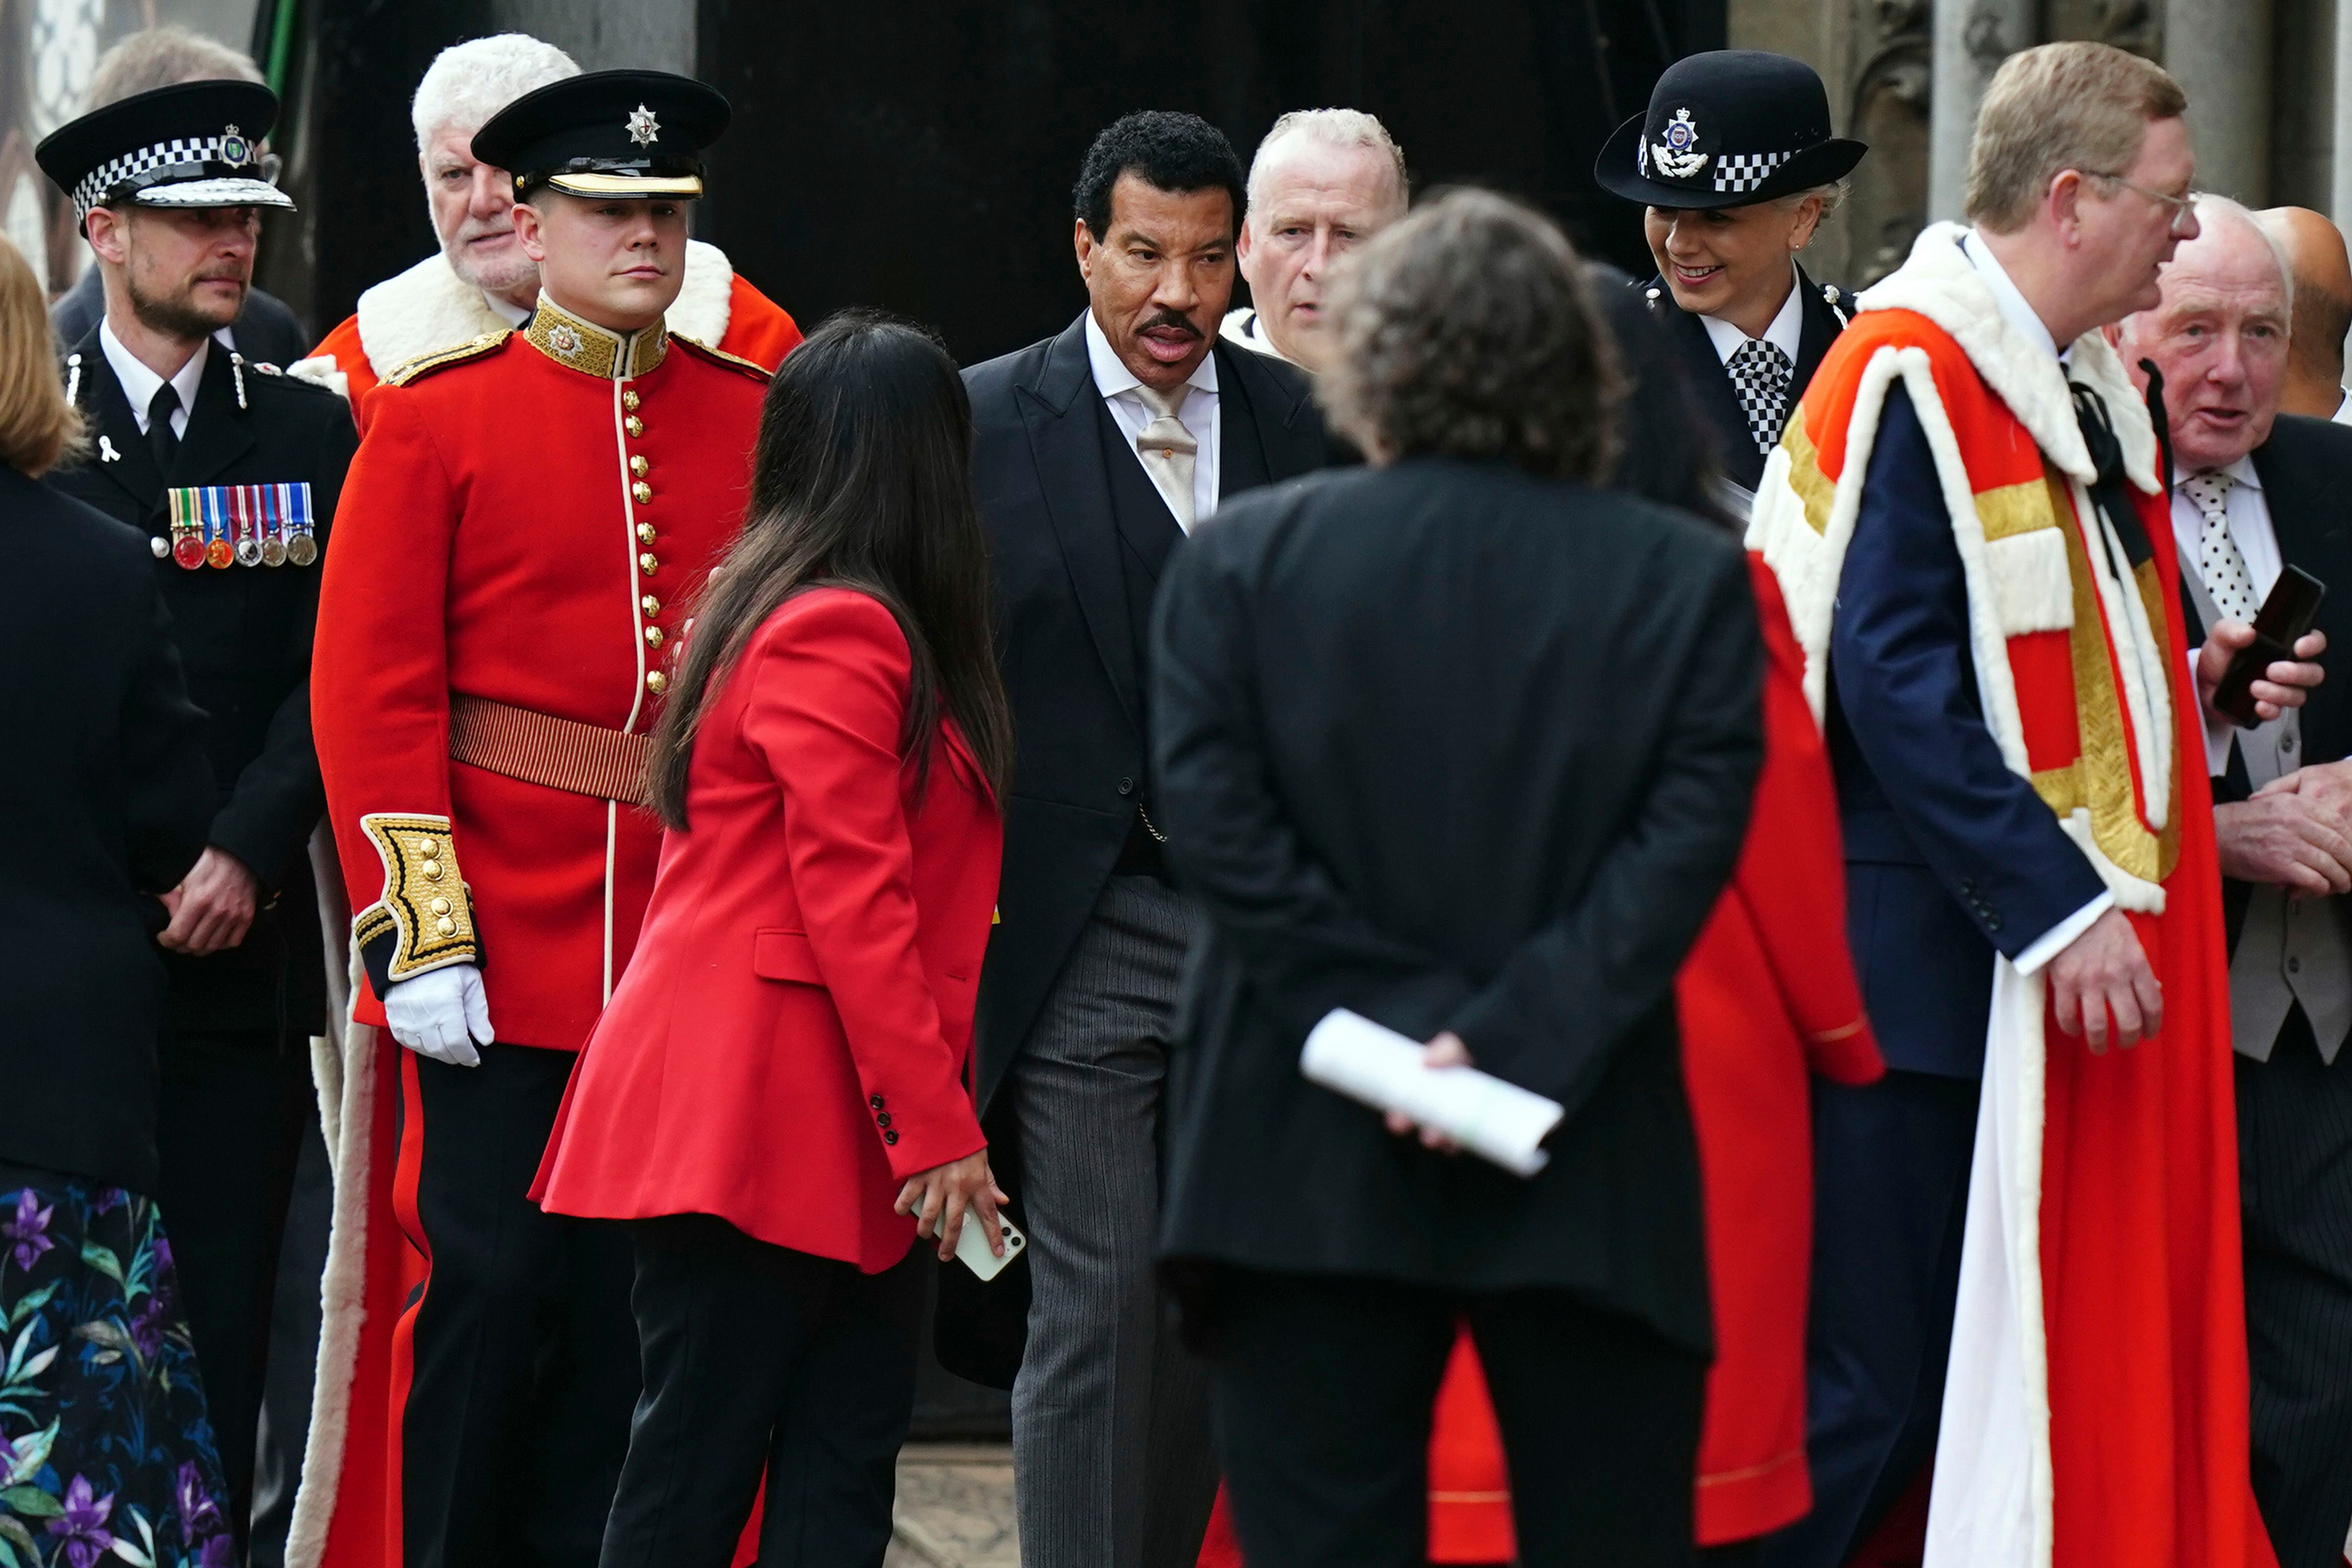 El cantante Lionel Richie, a su llegada a la abadía de Westminster. Él será uno de los artistas que actuará el domingo en el concierto en Windsor, uno de los eventos organizados para celebrar la coronación.